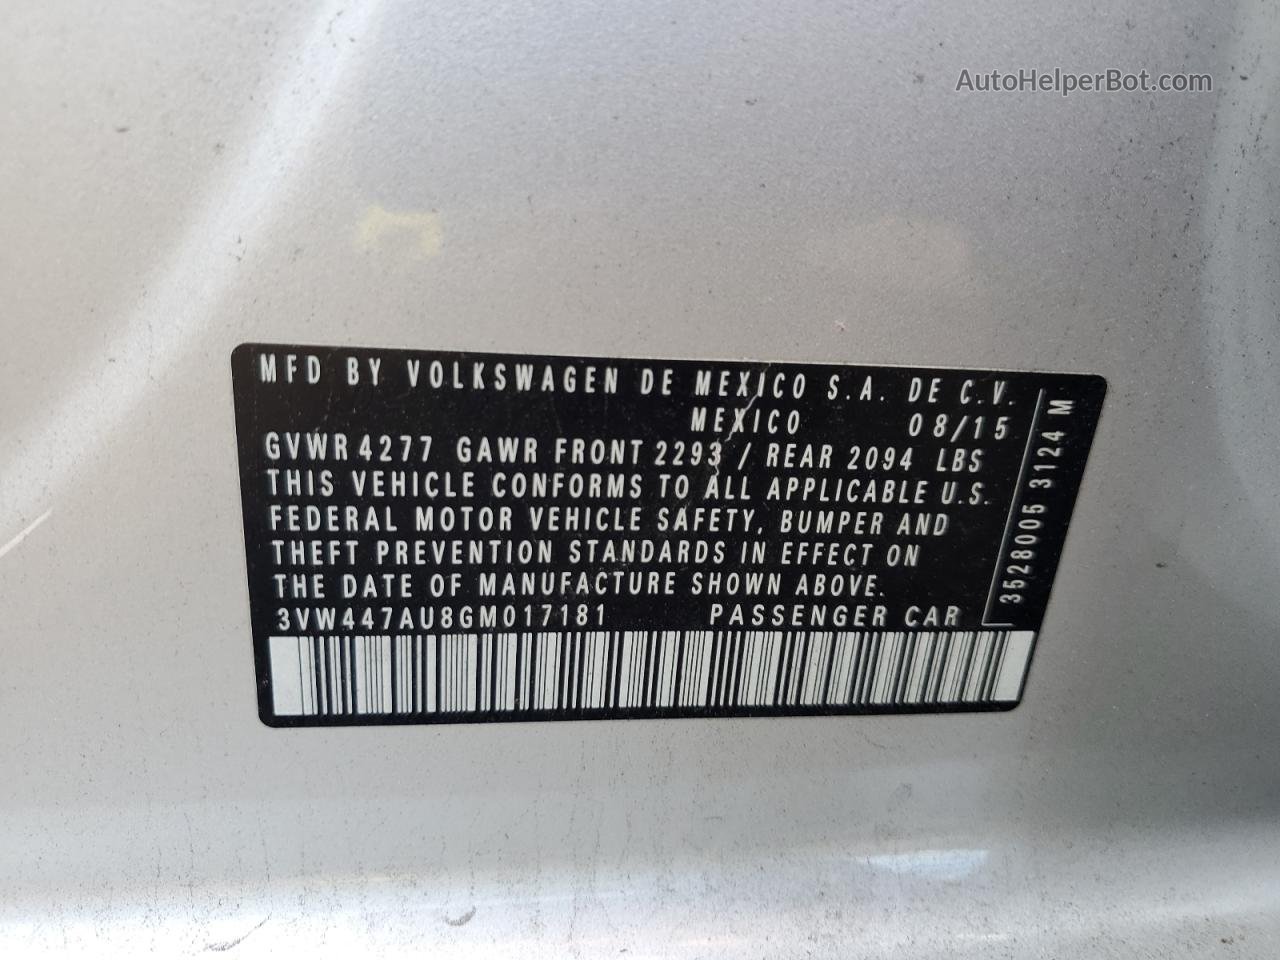 2016 Volkswagen Gti S/se Silver vin: 3VW447AU8GM017181